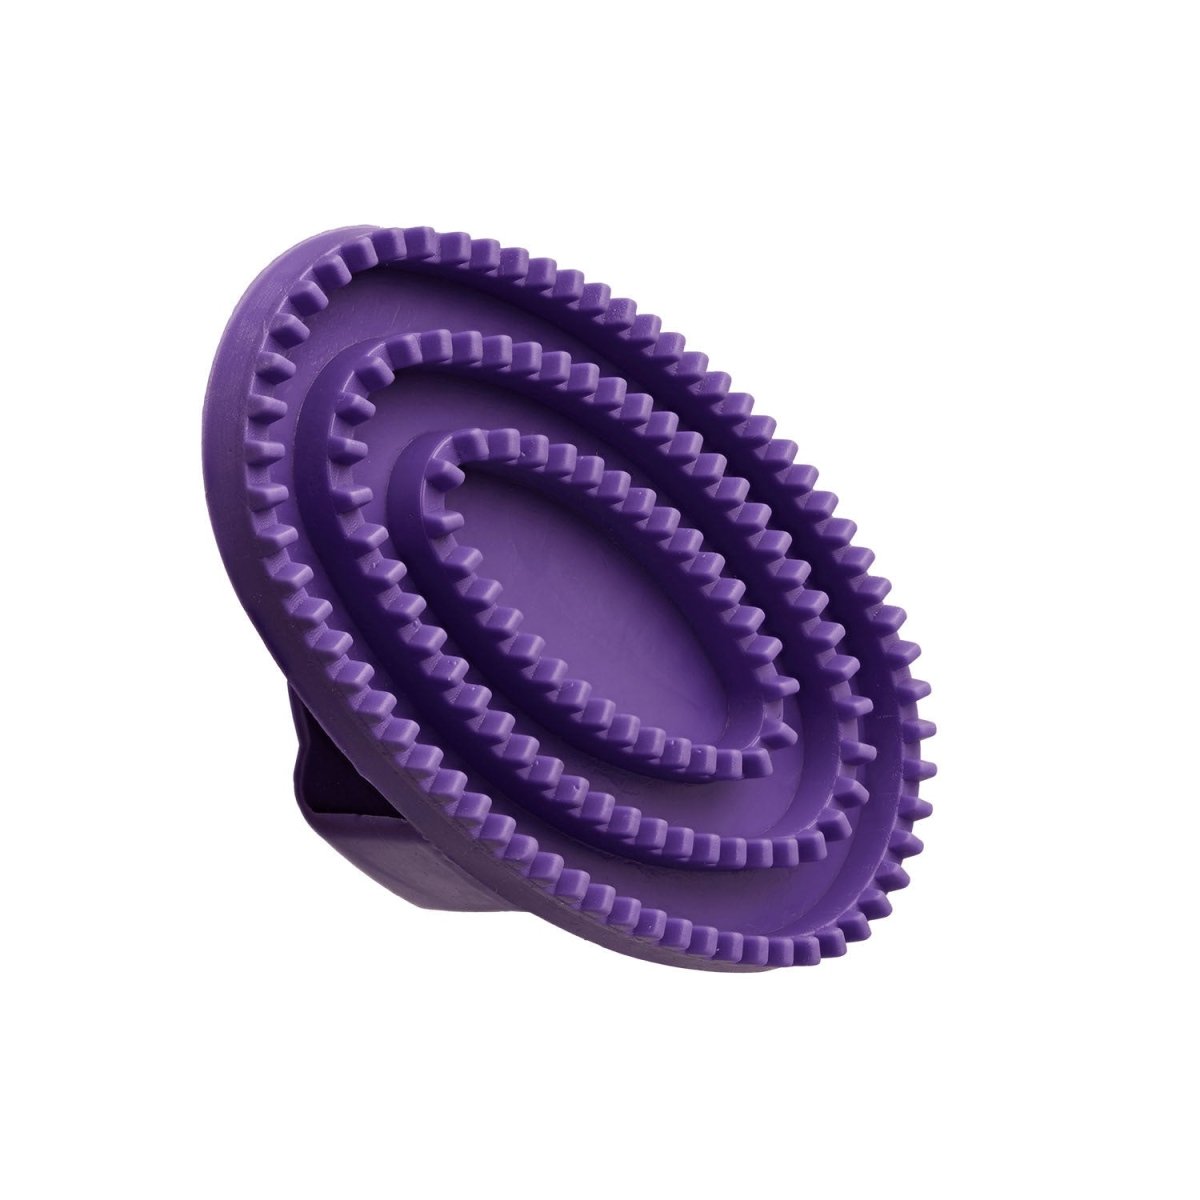 Bitz Curry Comb Rubber Small - Purple - Small